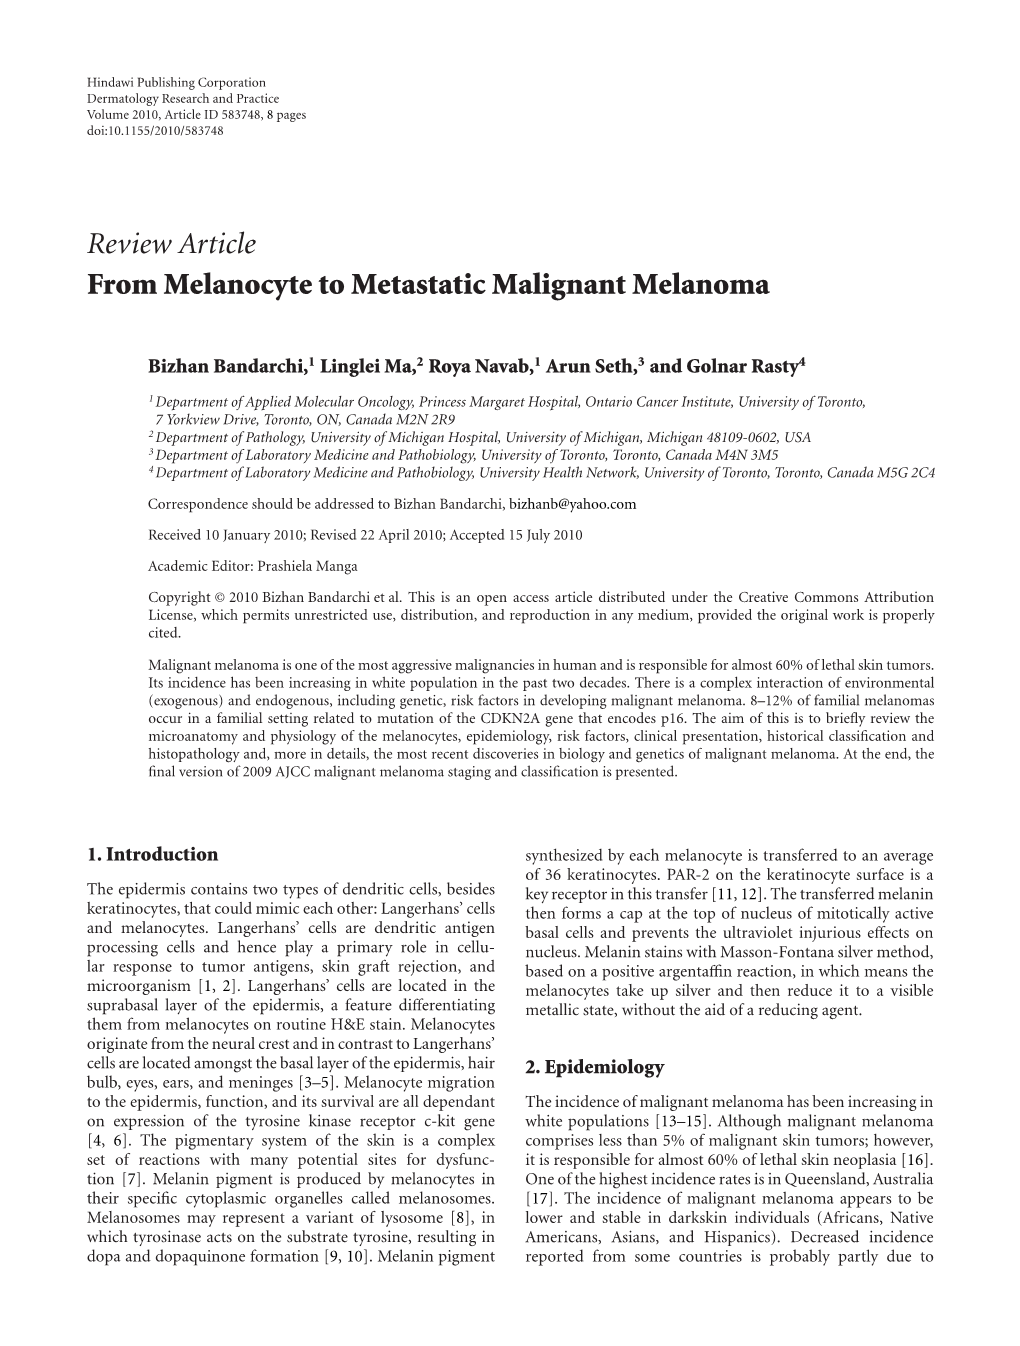 From Melanocyte to Metastatic Malignant Melanoma